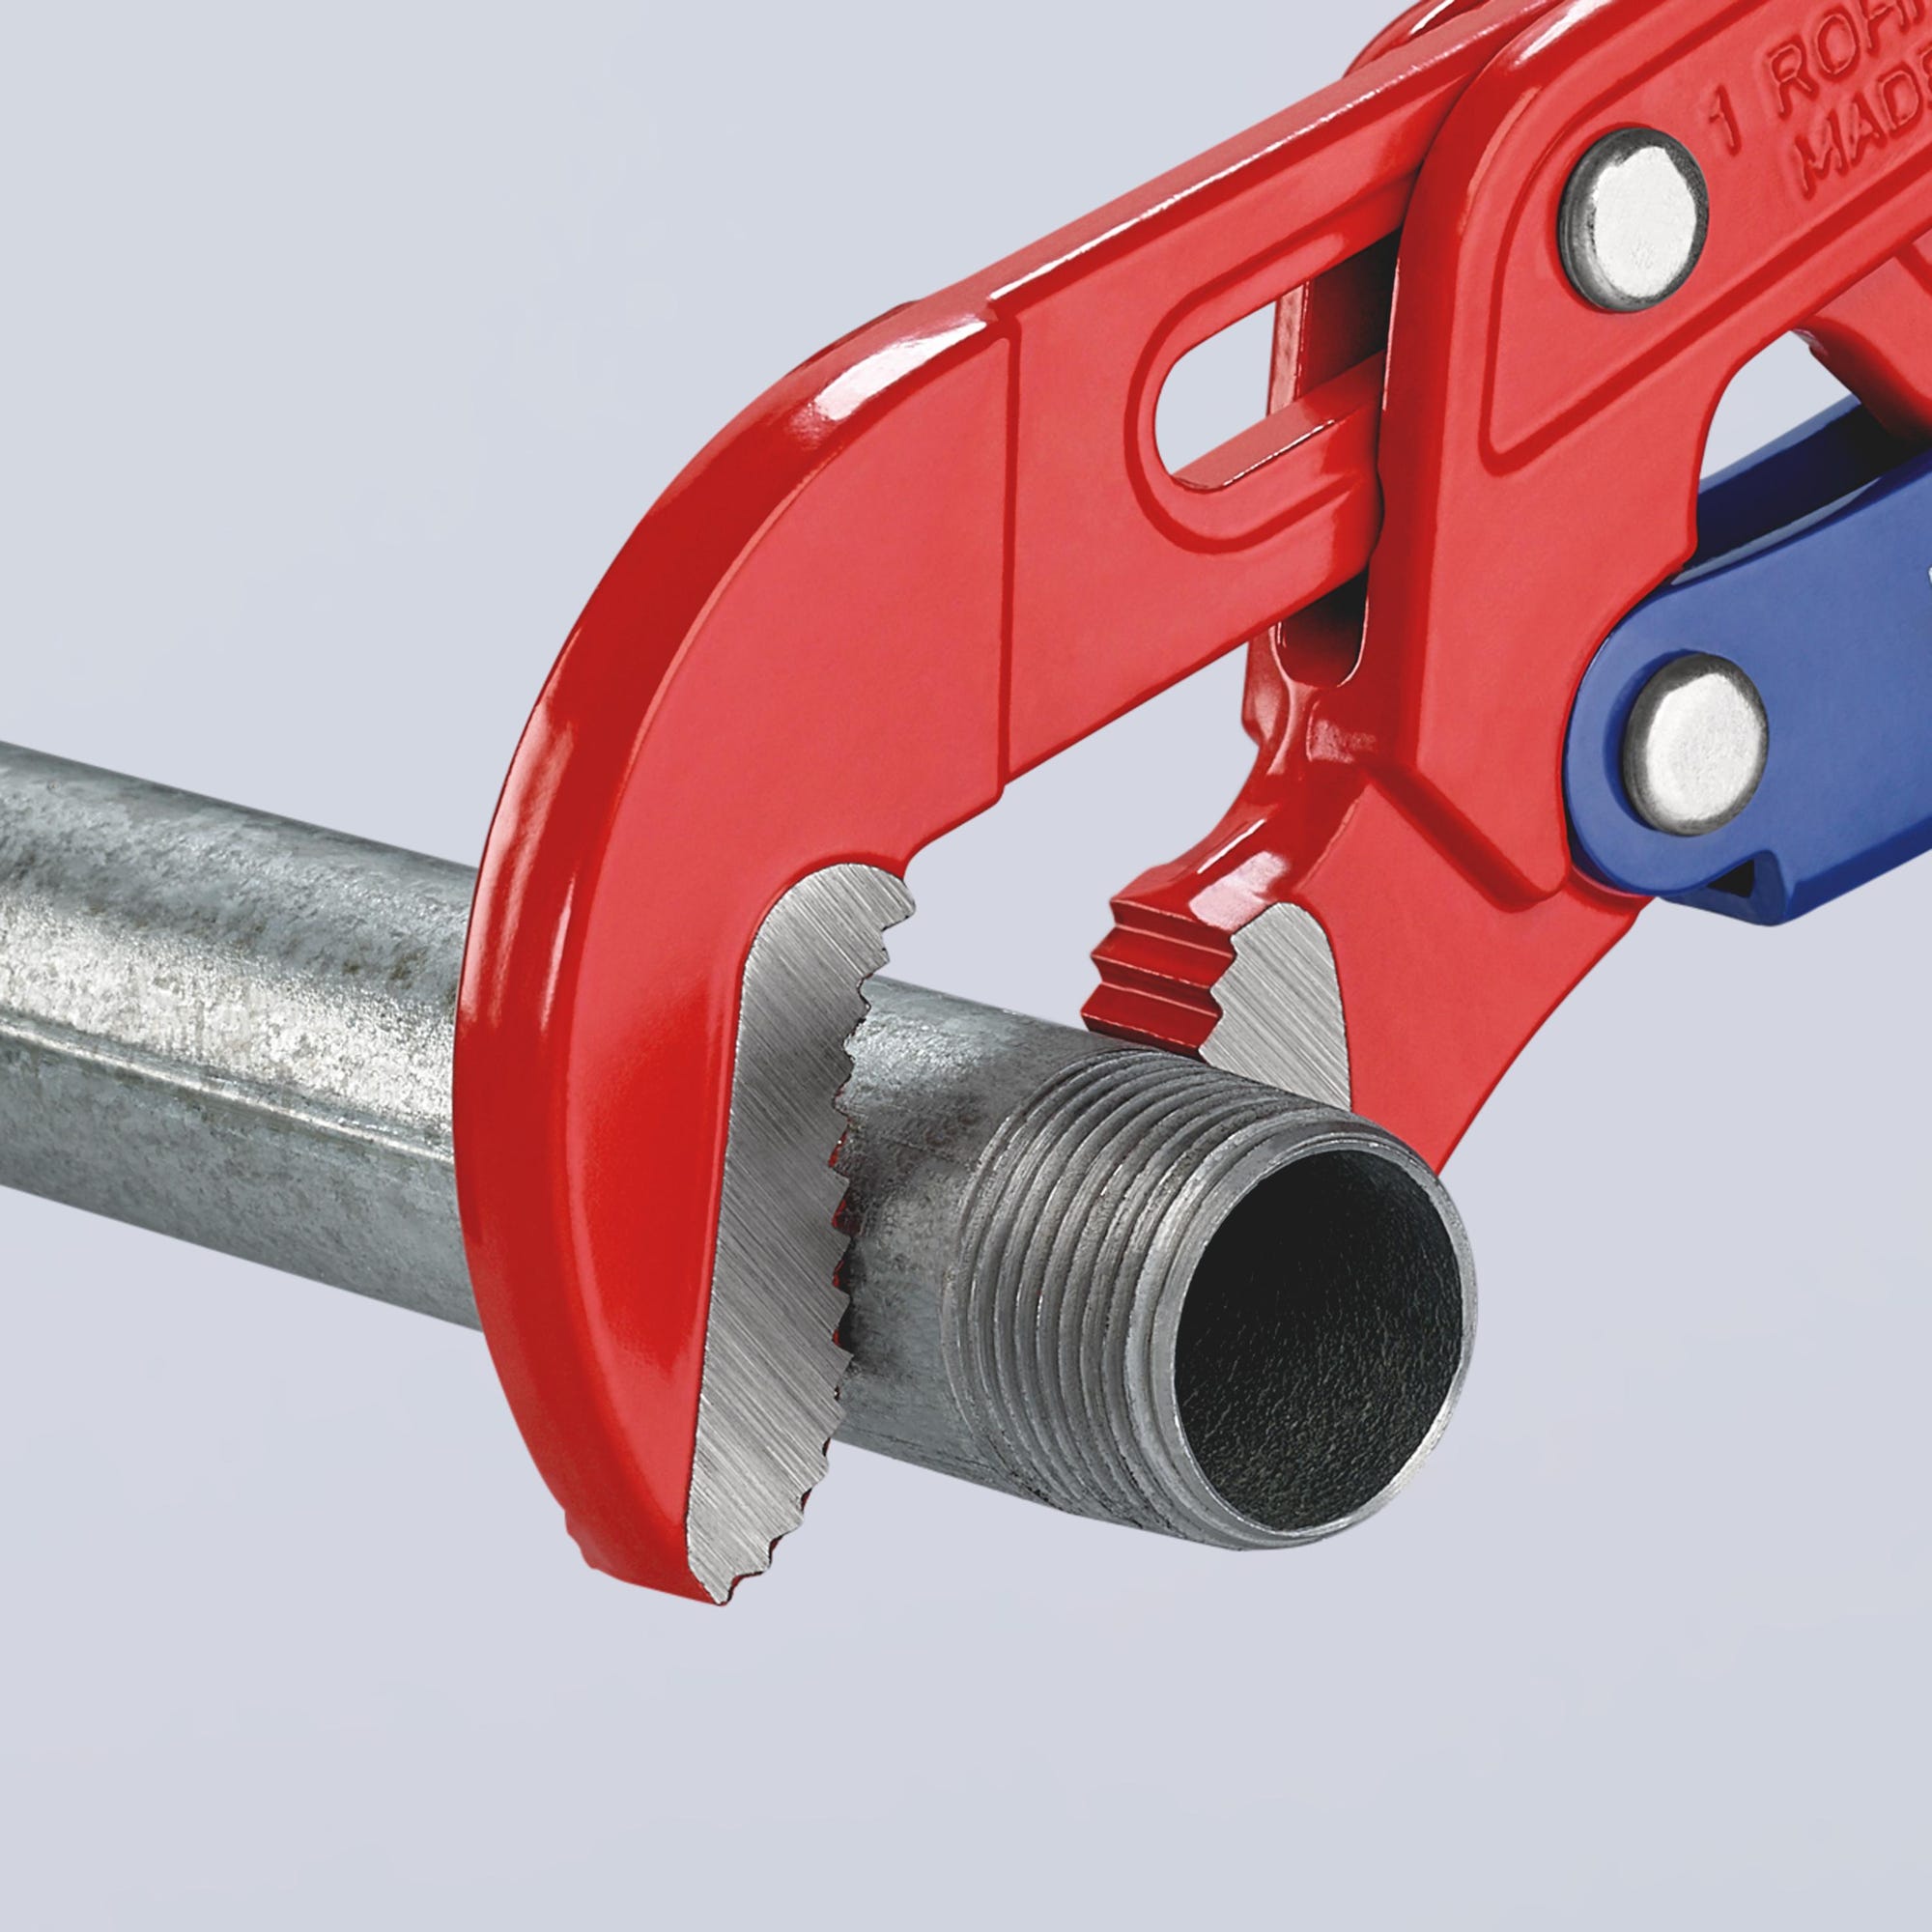 Clé serre-tubes pour tuyaux d'angle embouts S à réglage rapide, Pour Ø de tuyaux : 1.5/8 pouces, Long. 330 mm, Capacité de serrage 42 mm 3